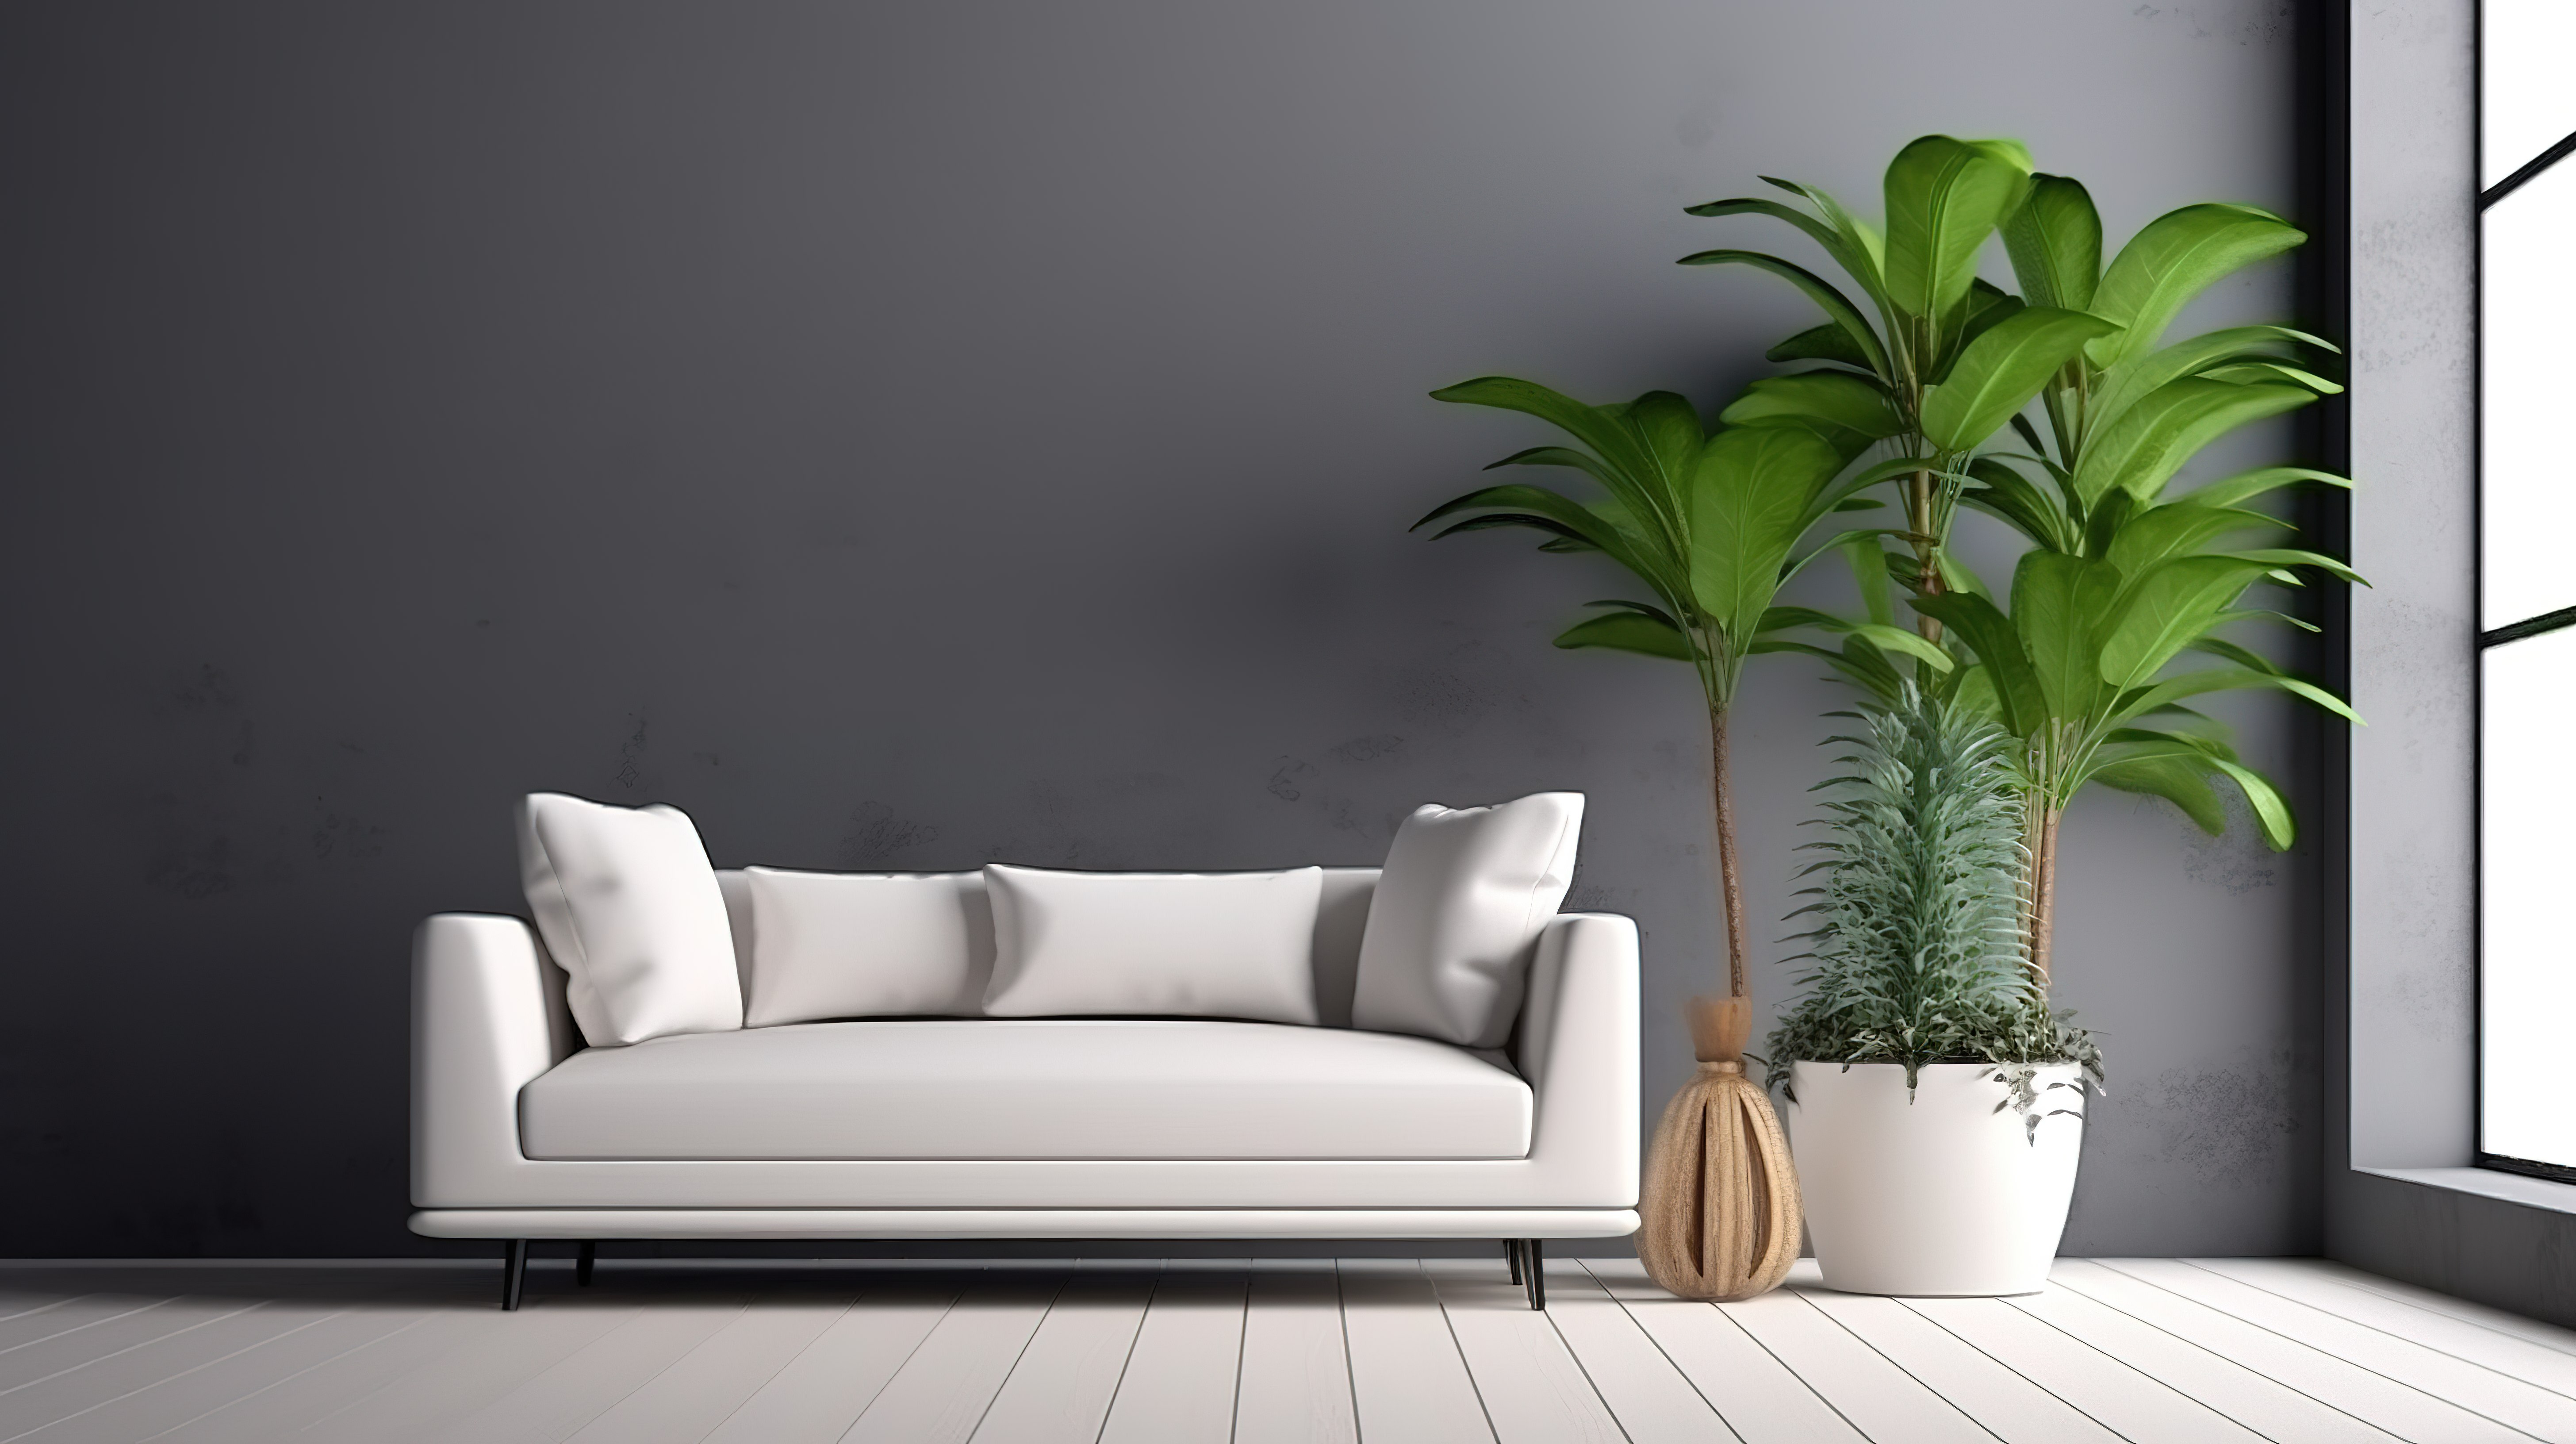 宽敞客厅的现代风格白色沙发郁郁葱葱的绿色植物和简约的灰色墙壁 3D 渲染图片